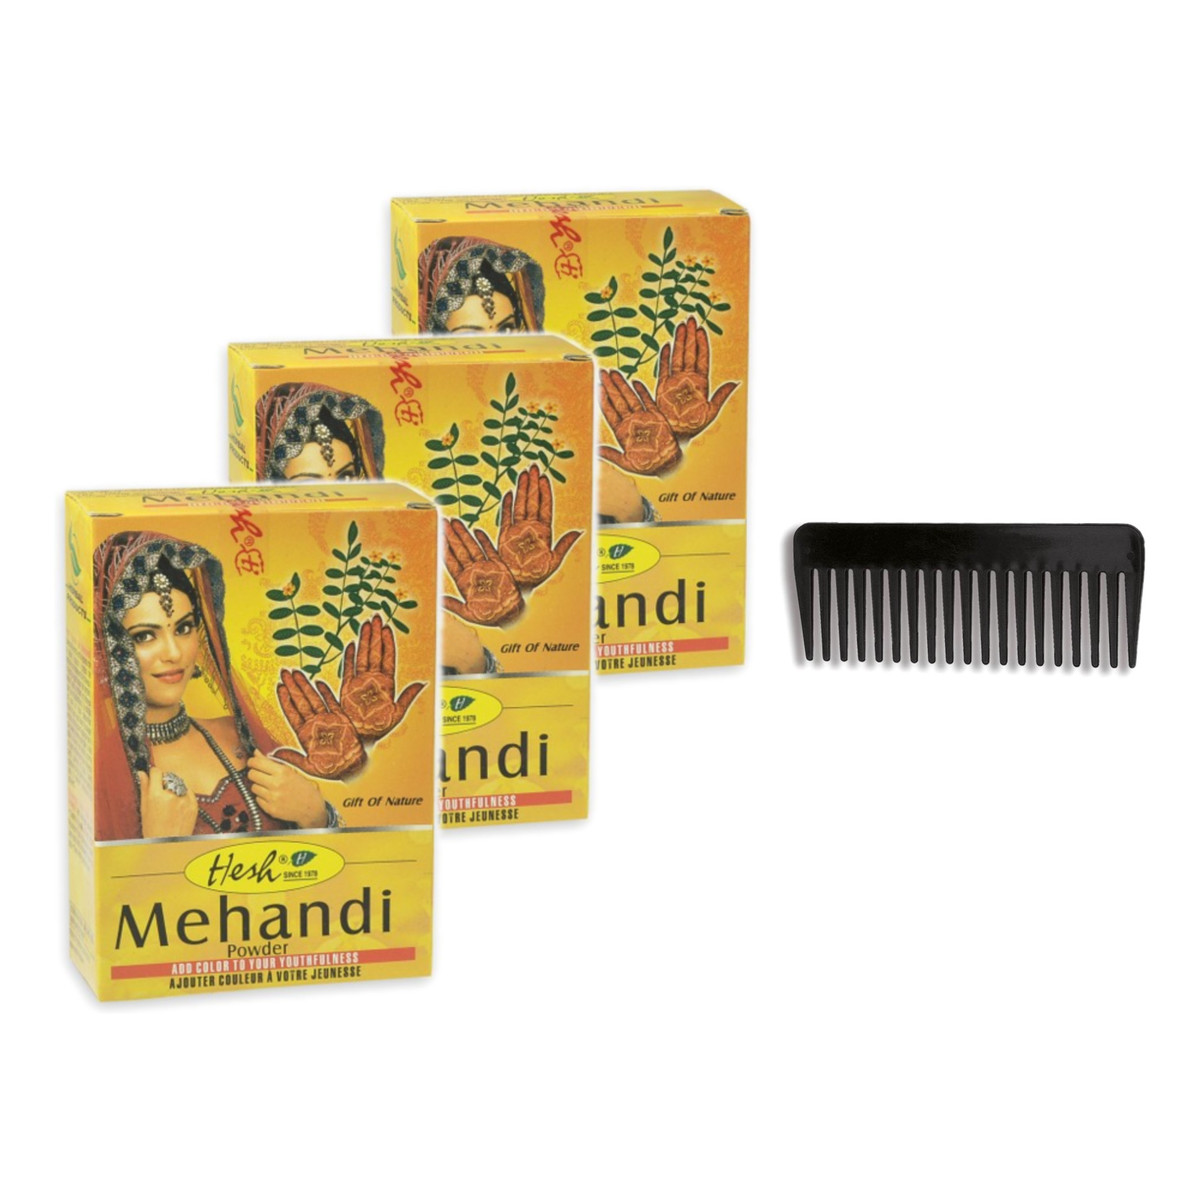 Hesh Mehandi Henna Do Włosów i Zdobienia Ciała 3szt.x100g + Donegal grzebień